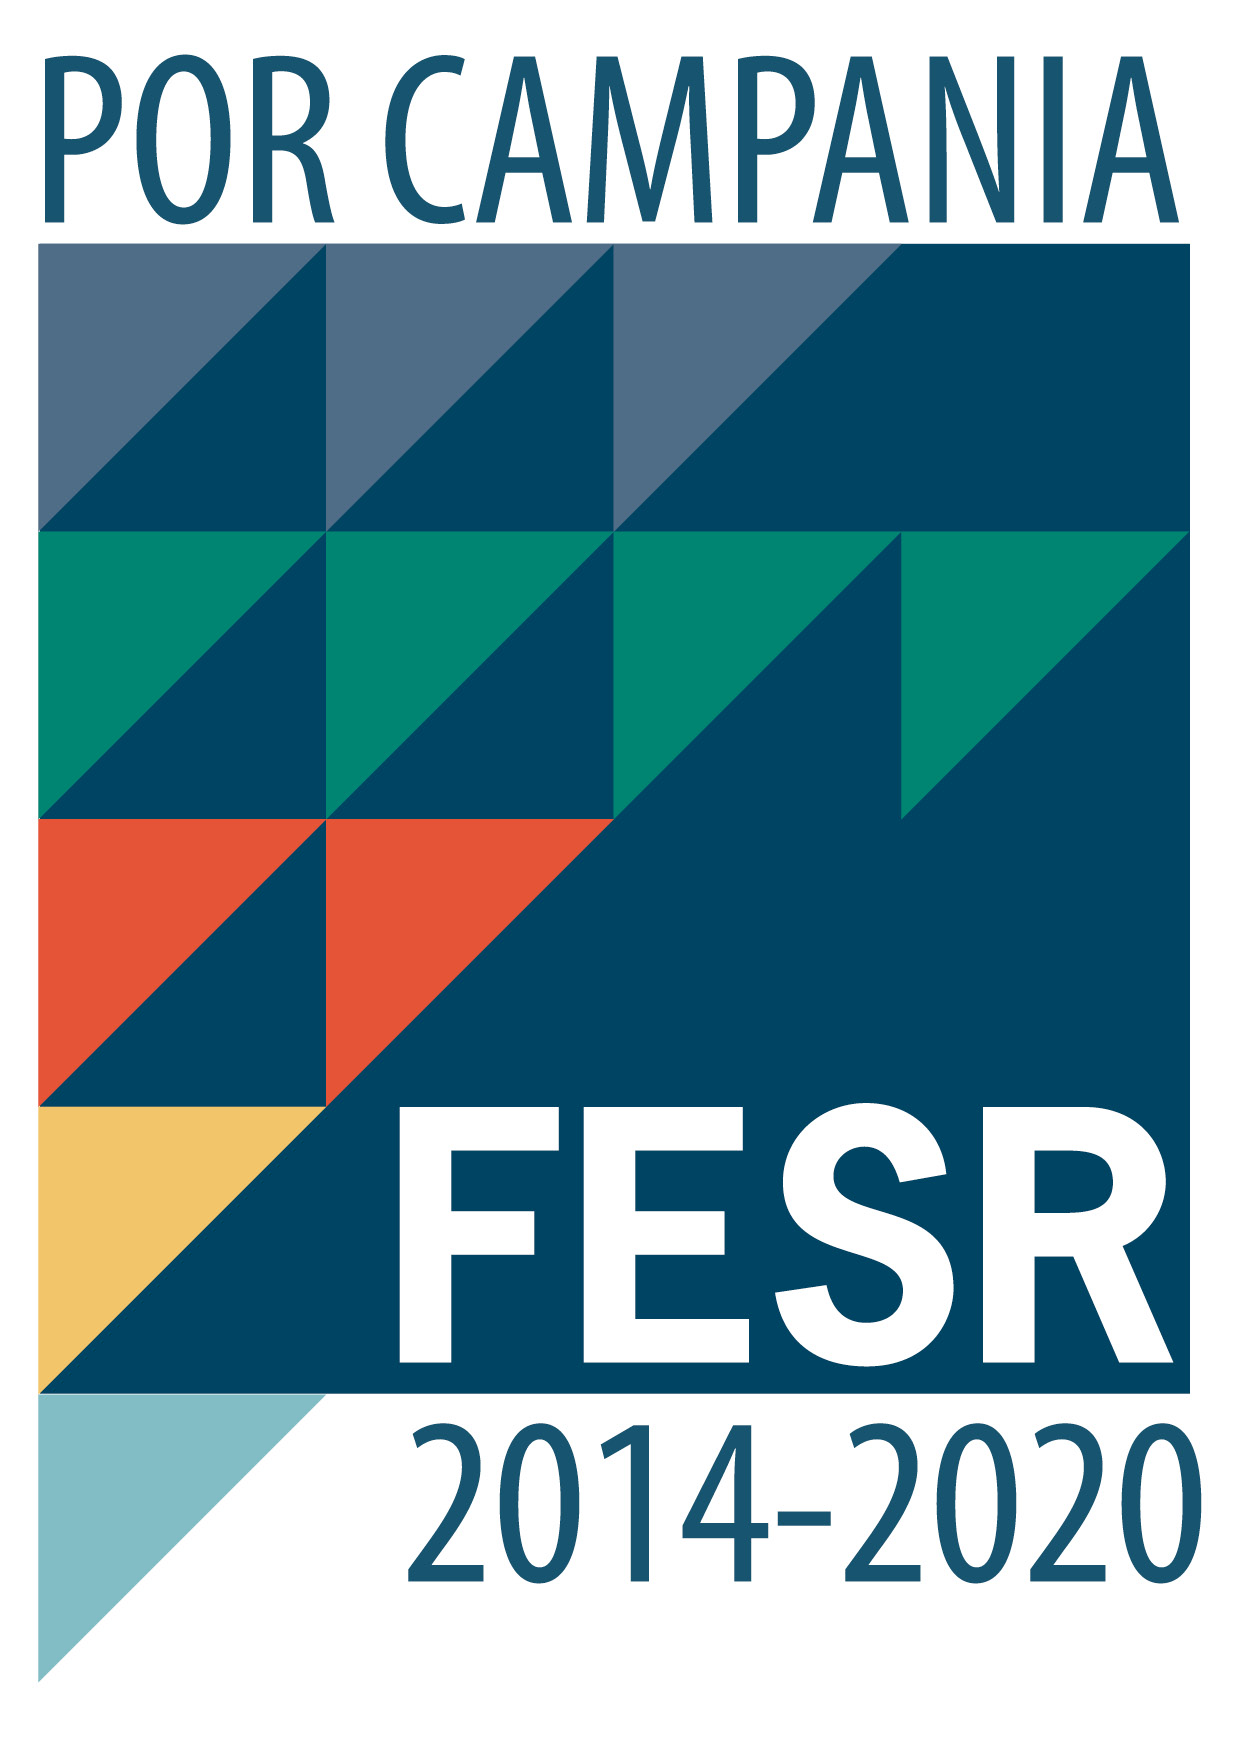 Logo Fesr